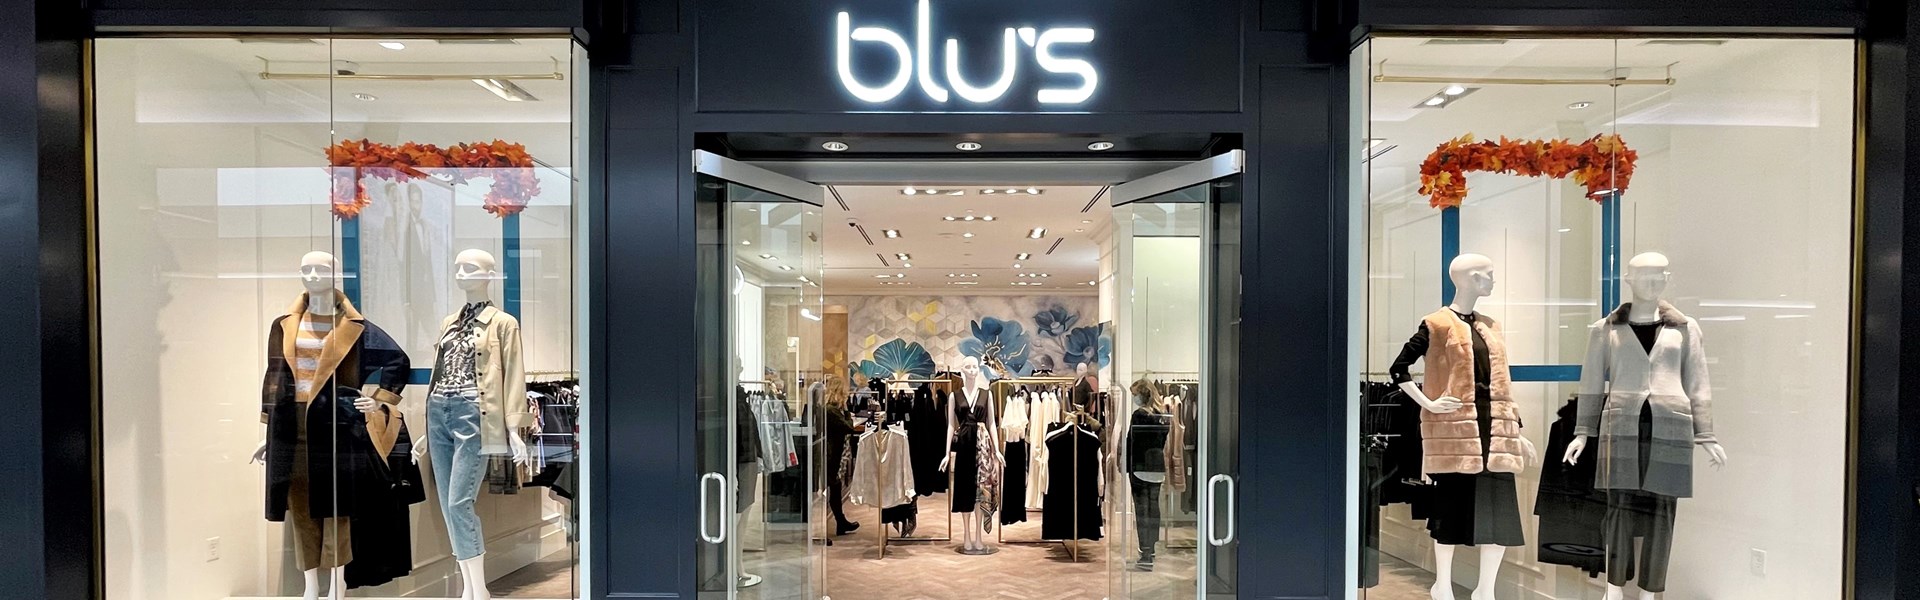 Blu's